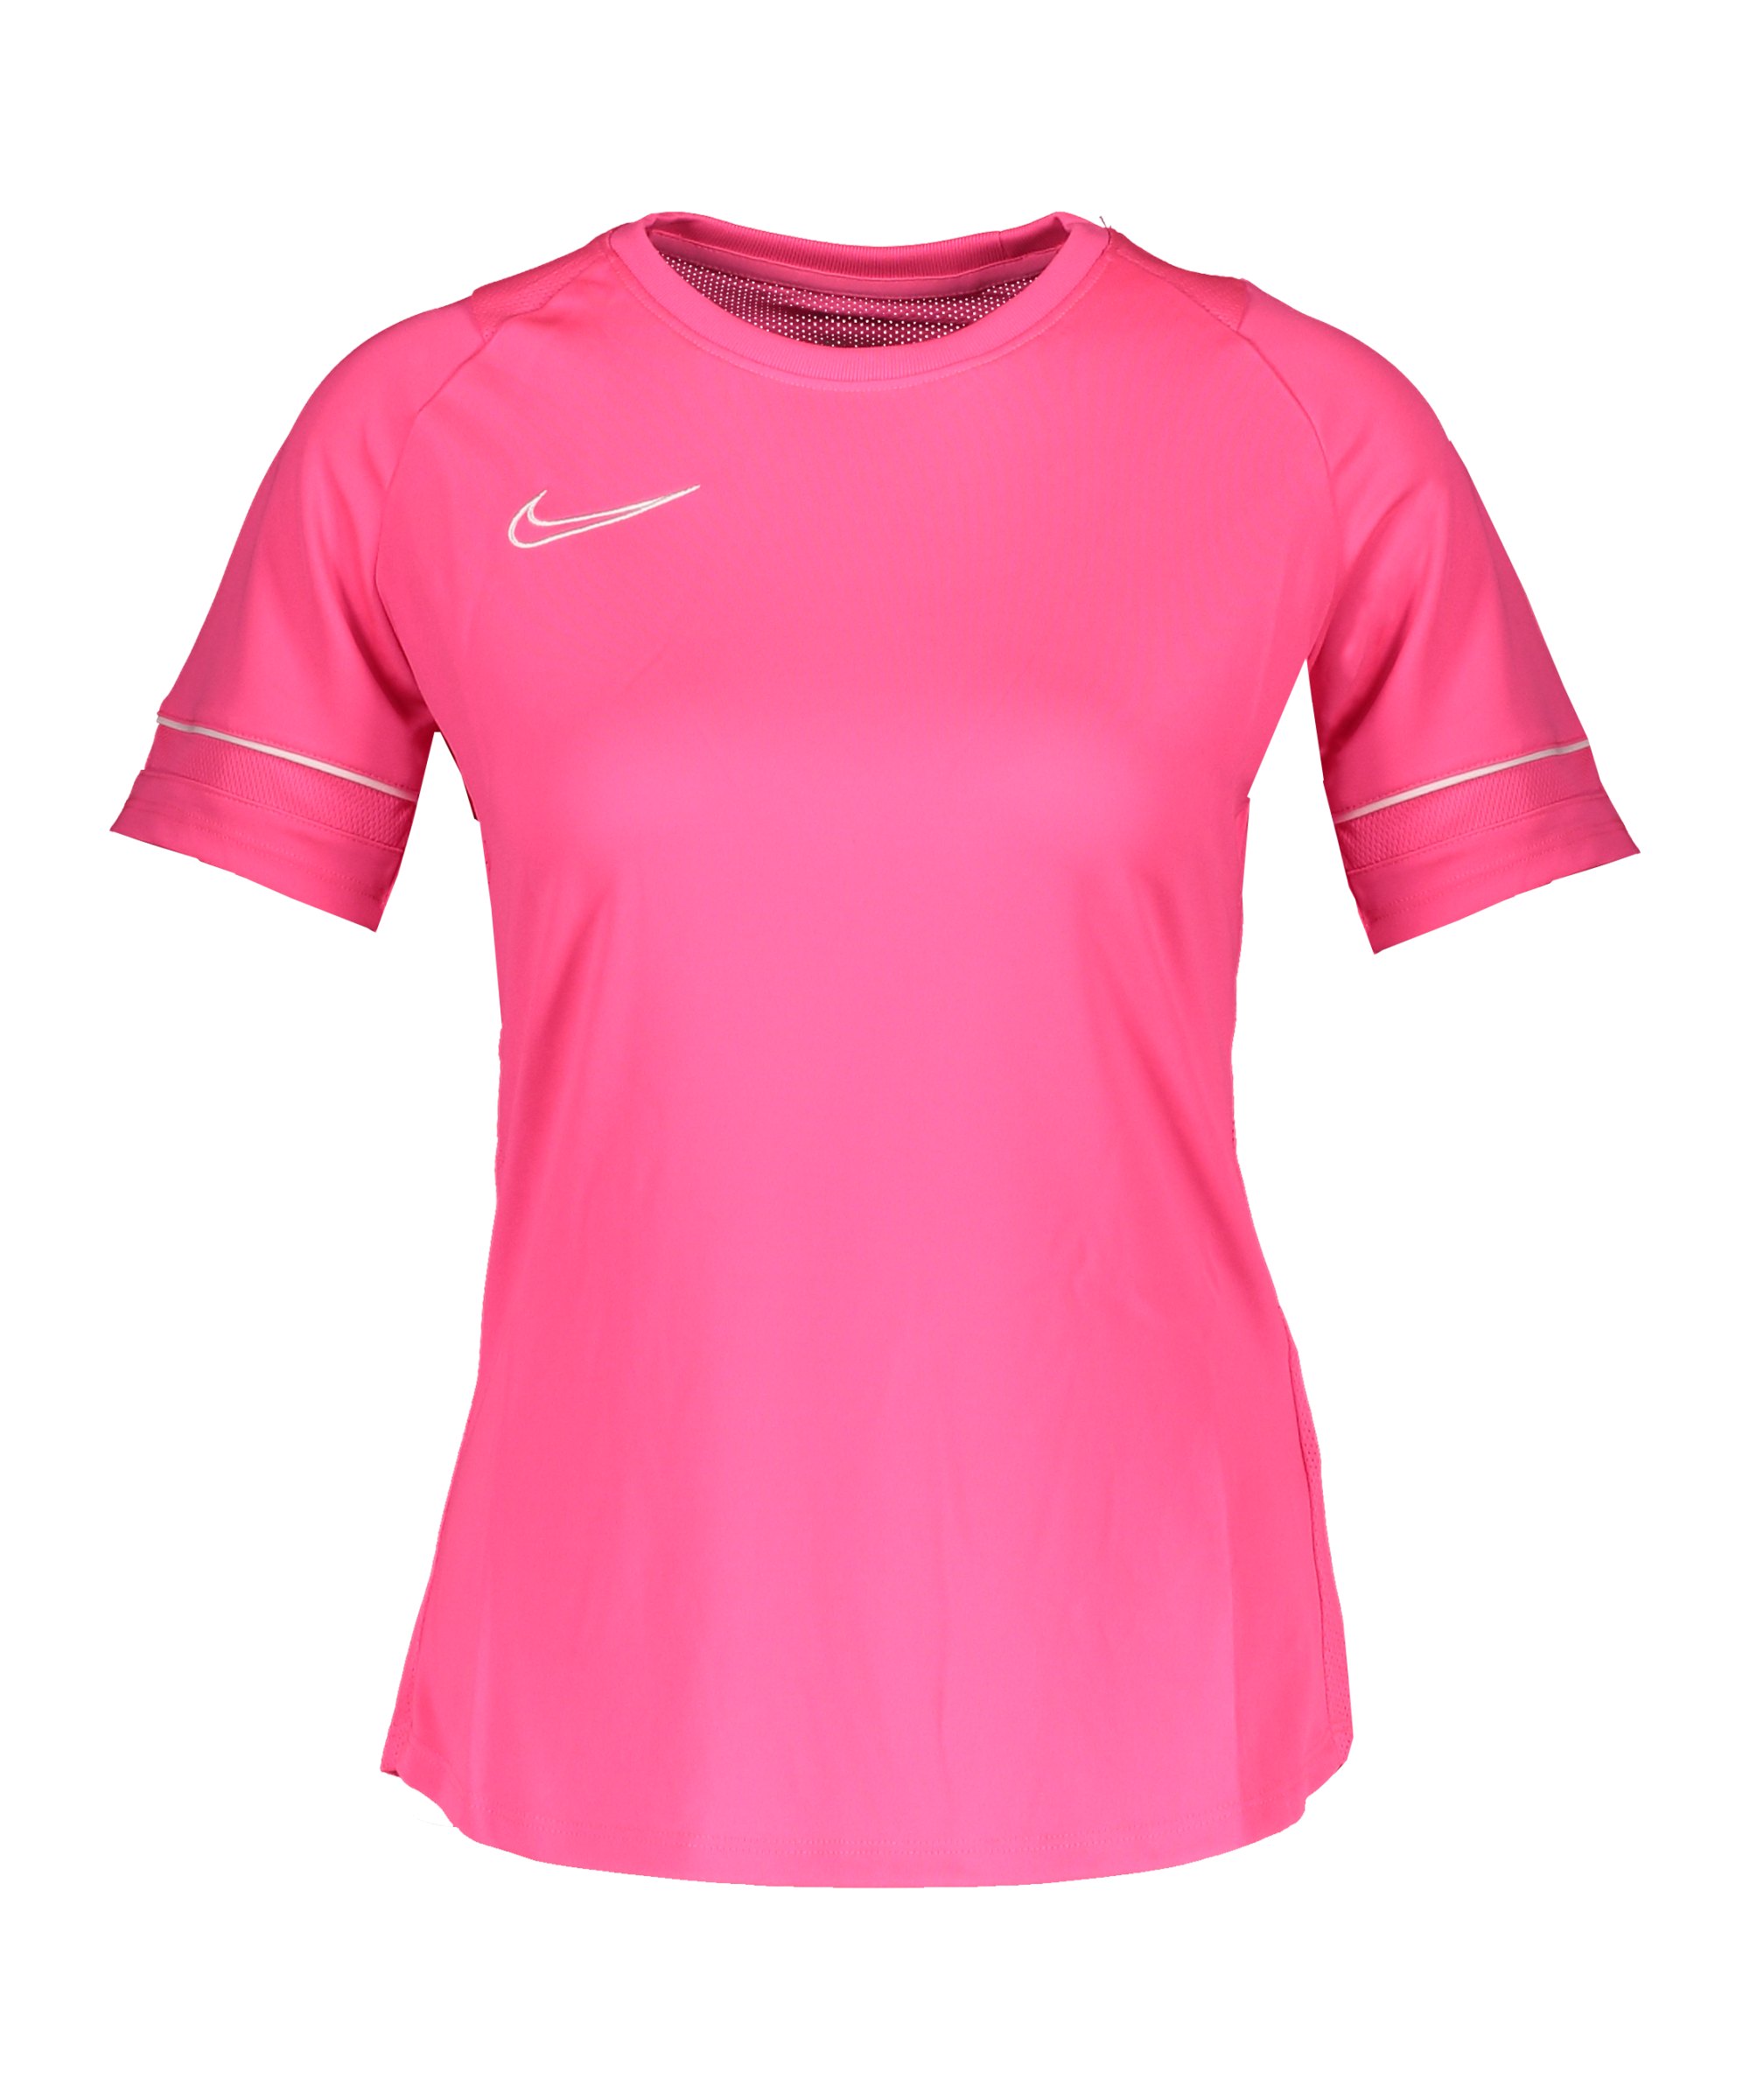 Nike Academy T-Shirt Damen Pink Weiss F639 - pink